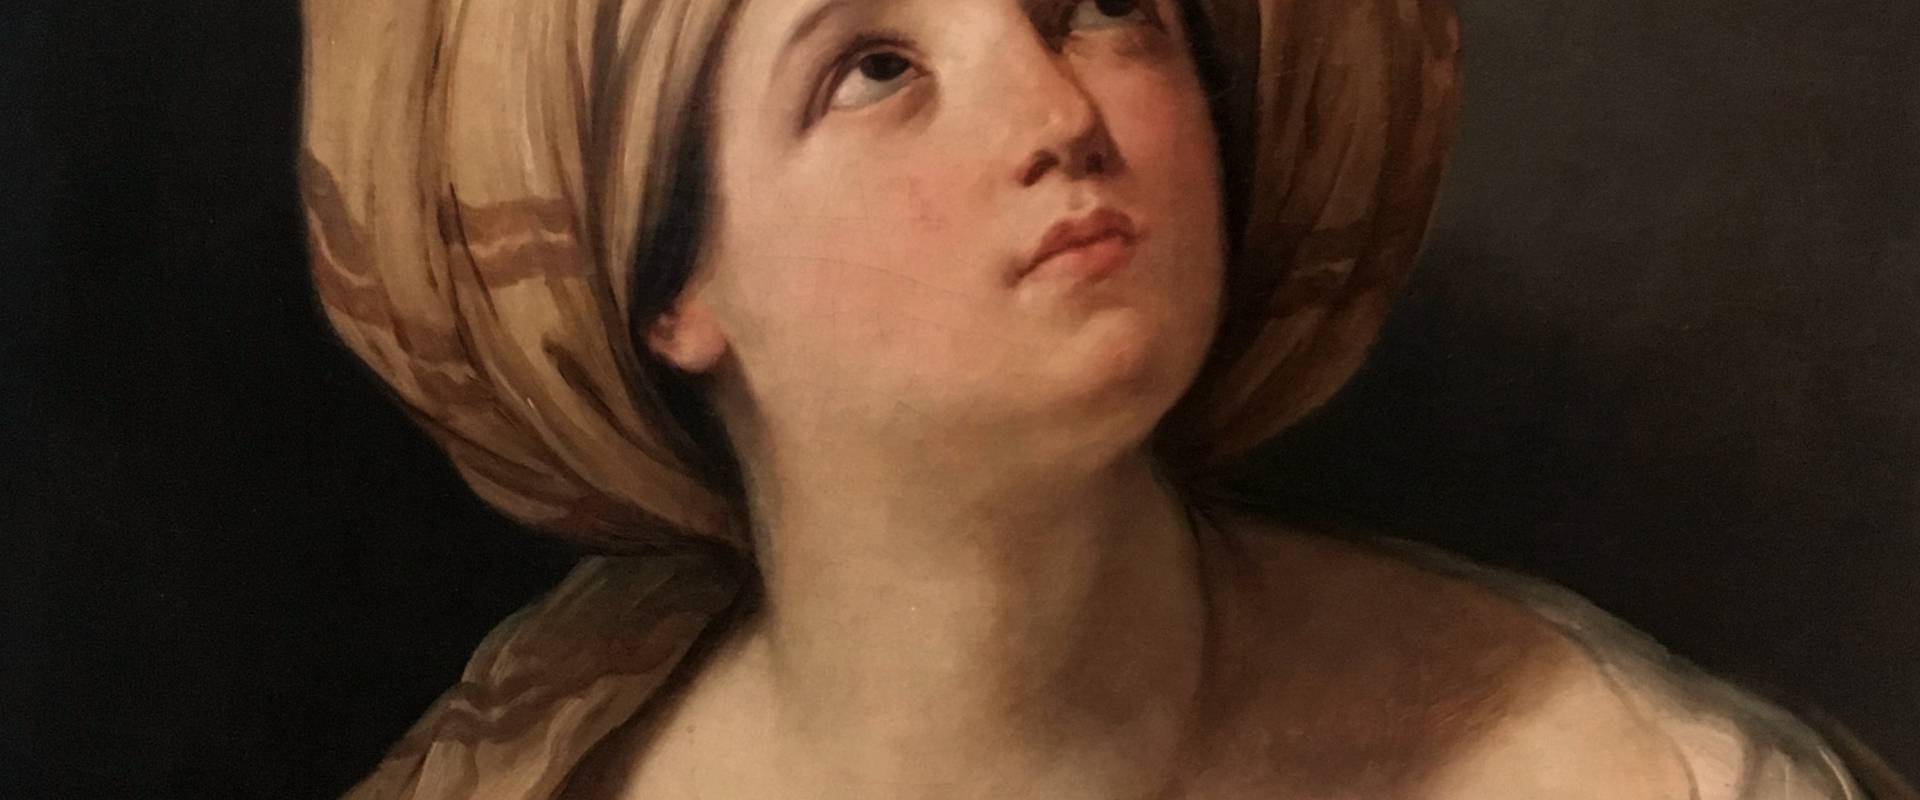 Sibilla Guido Reni foto di Waltre manni